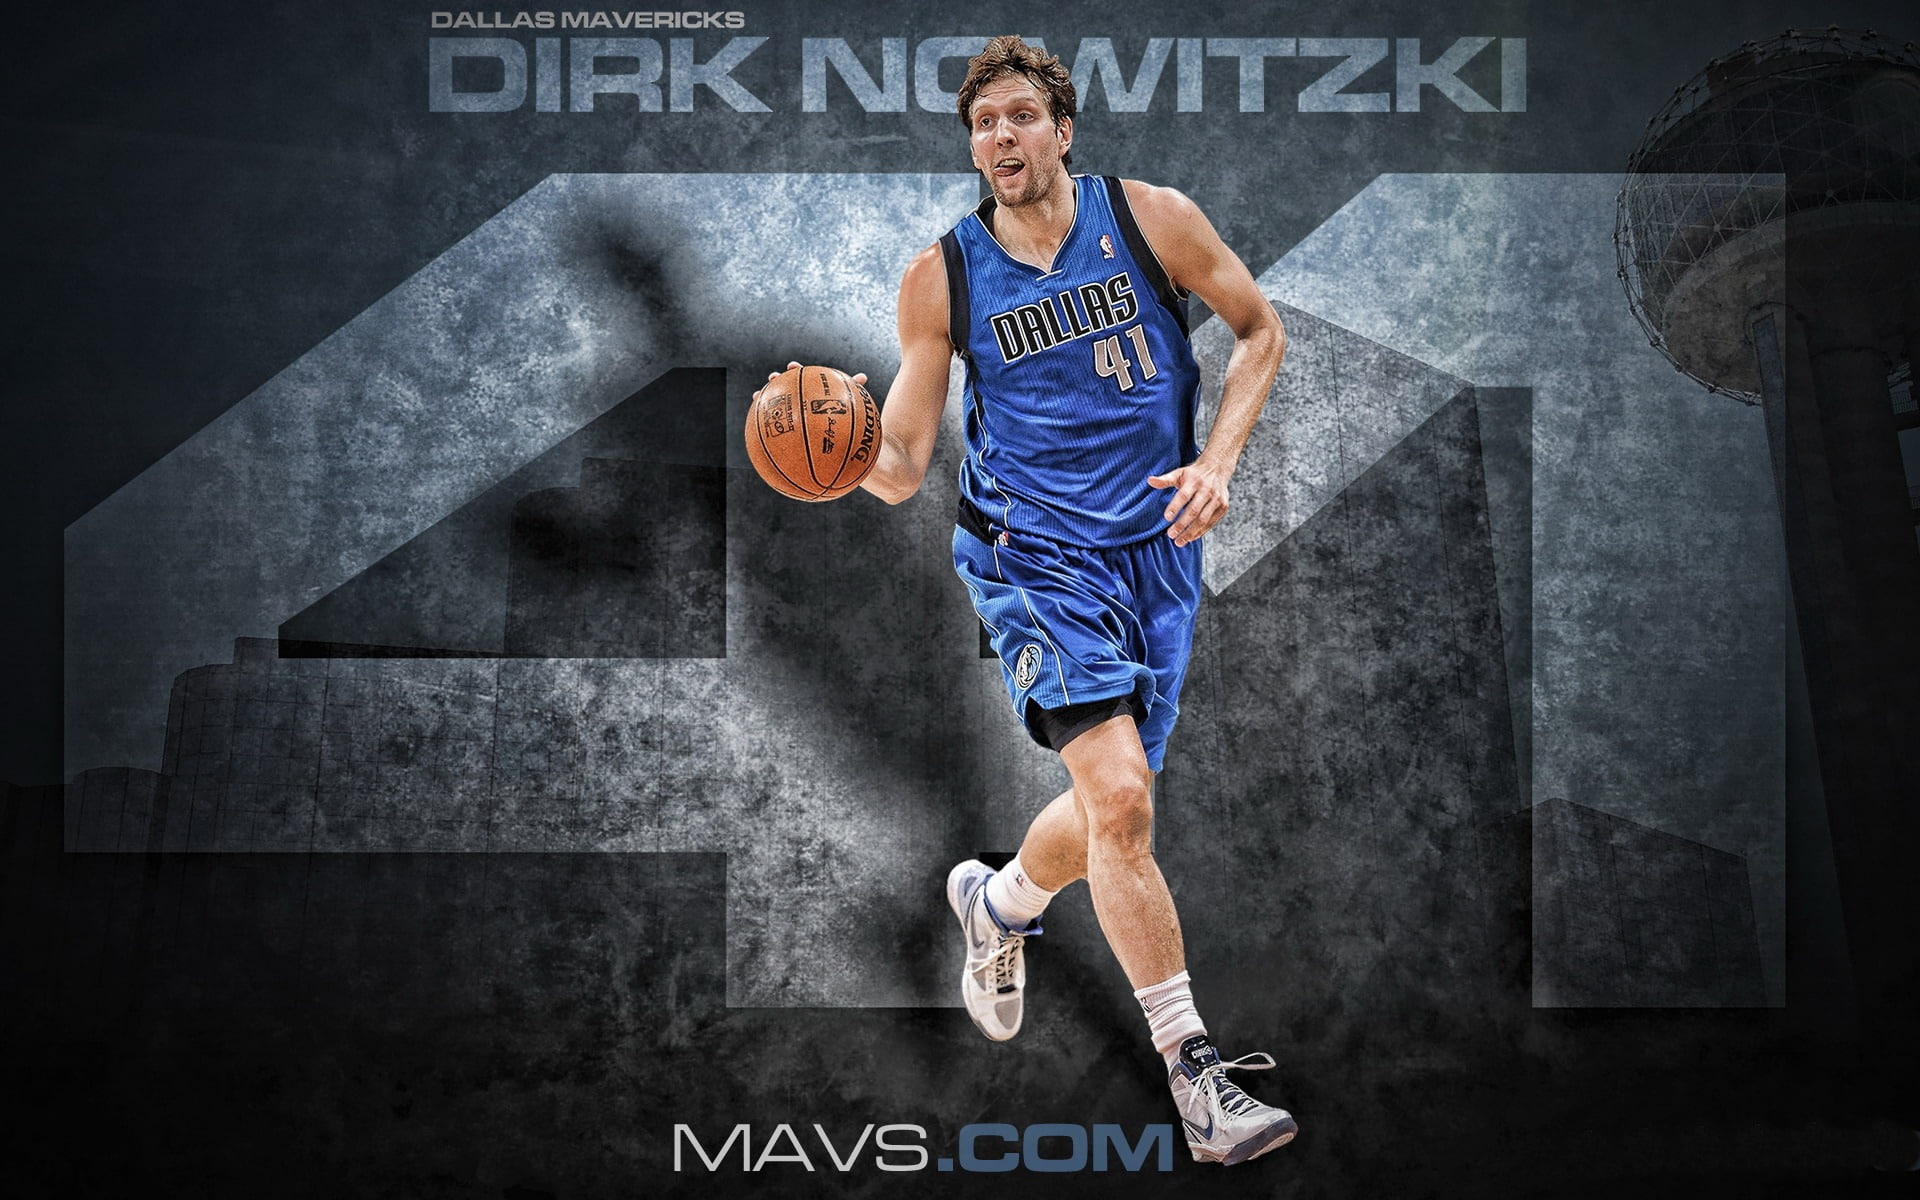 Dirk Nowitzki-NBA 2013-2014 Wallpaper, Dirk Nowitzki wallpaper